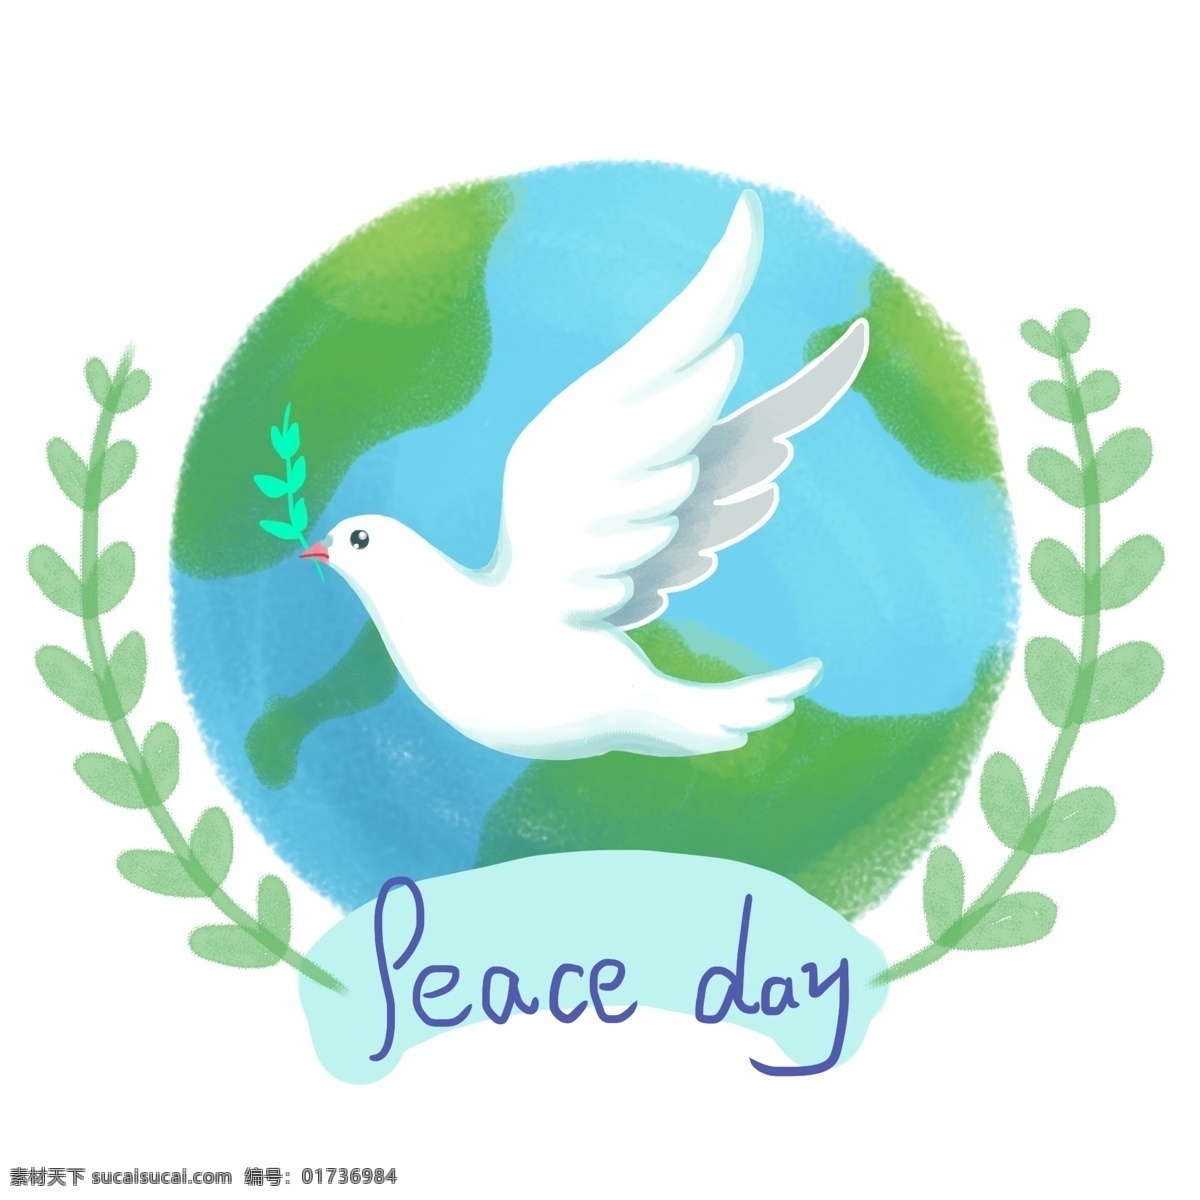 国际 平日 手绘 小 清新 鸽子 橄榄枝 地球 插画 小清新 电商 原创 国际和平日 和平 手账